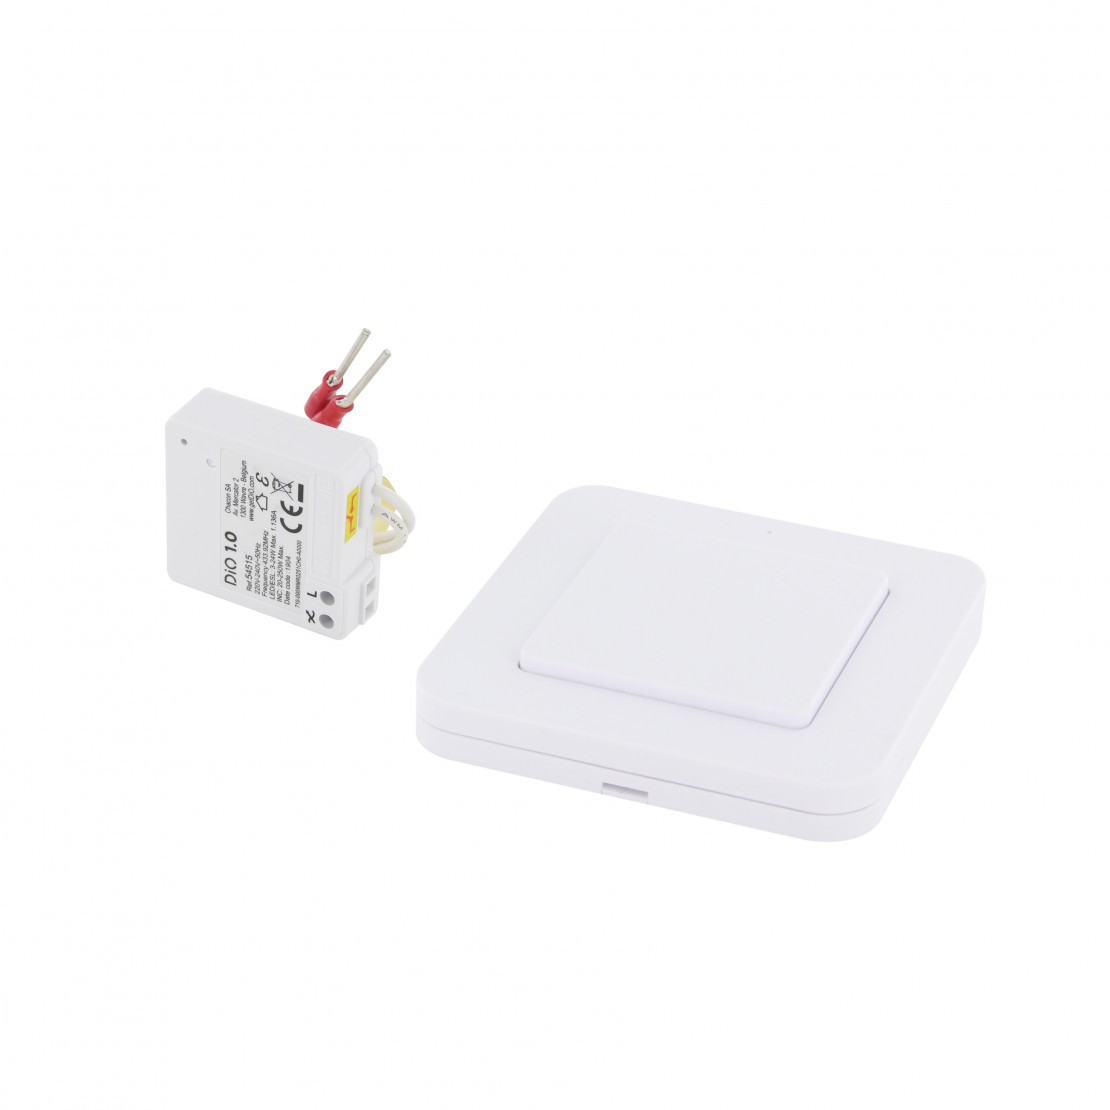 Micromodulo On/Off e interruttore wireless